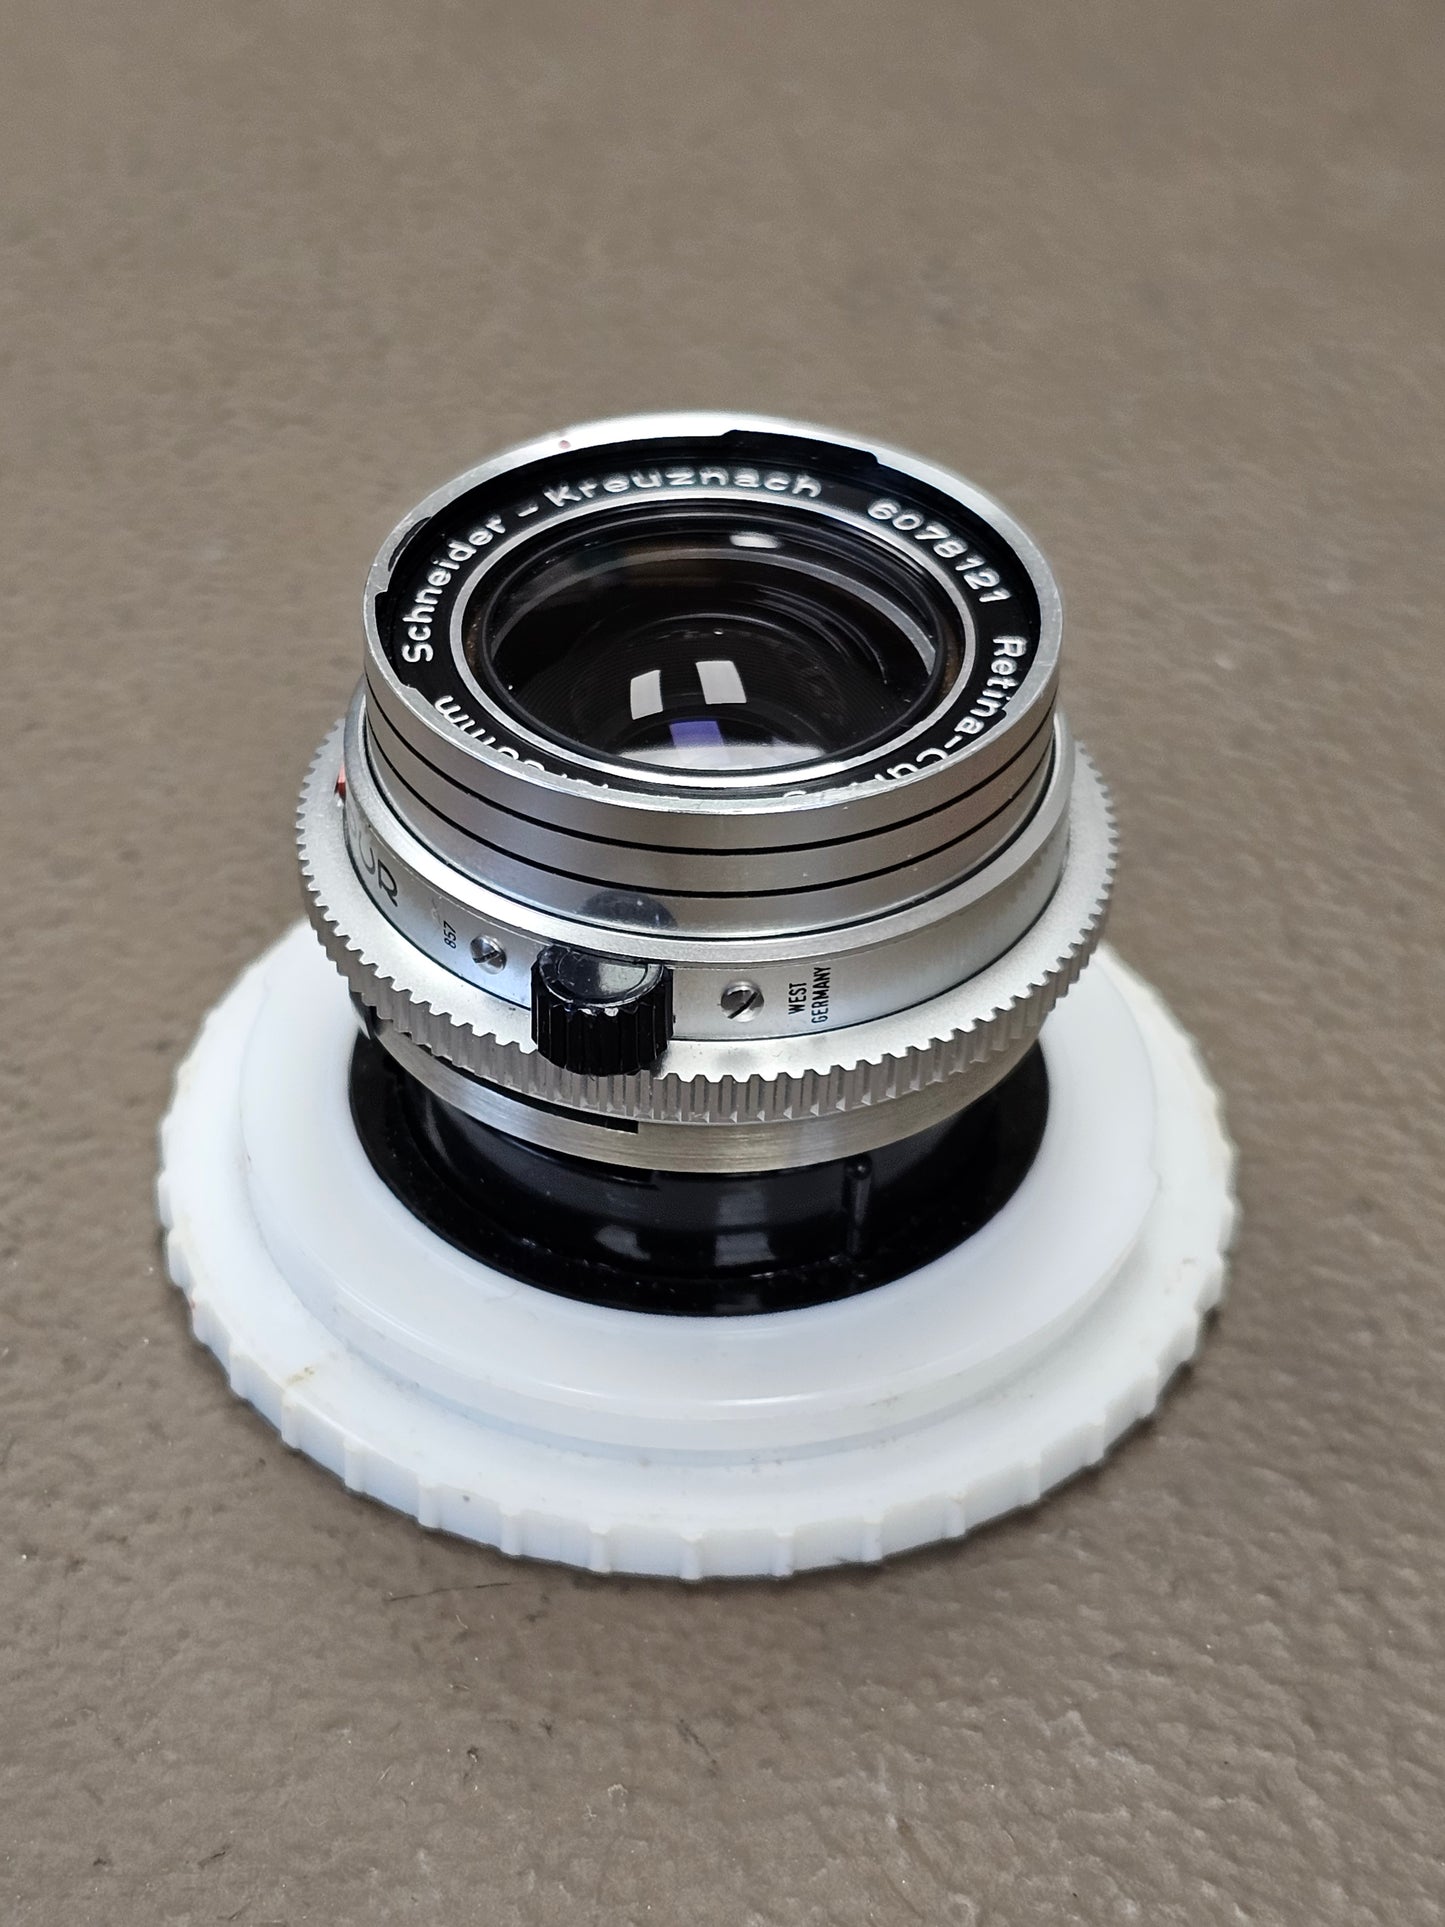 Schneider-Kreuznach Retina-Curtagon 35mm f2.8 Compur for Kodak Retina Reflex S# 6078121